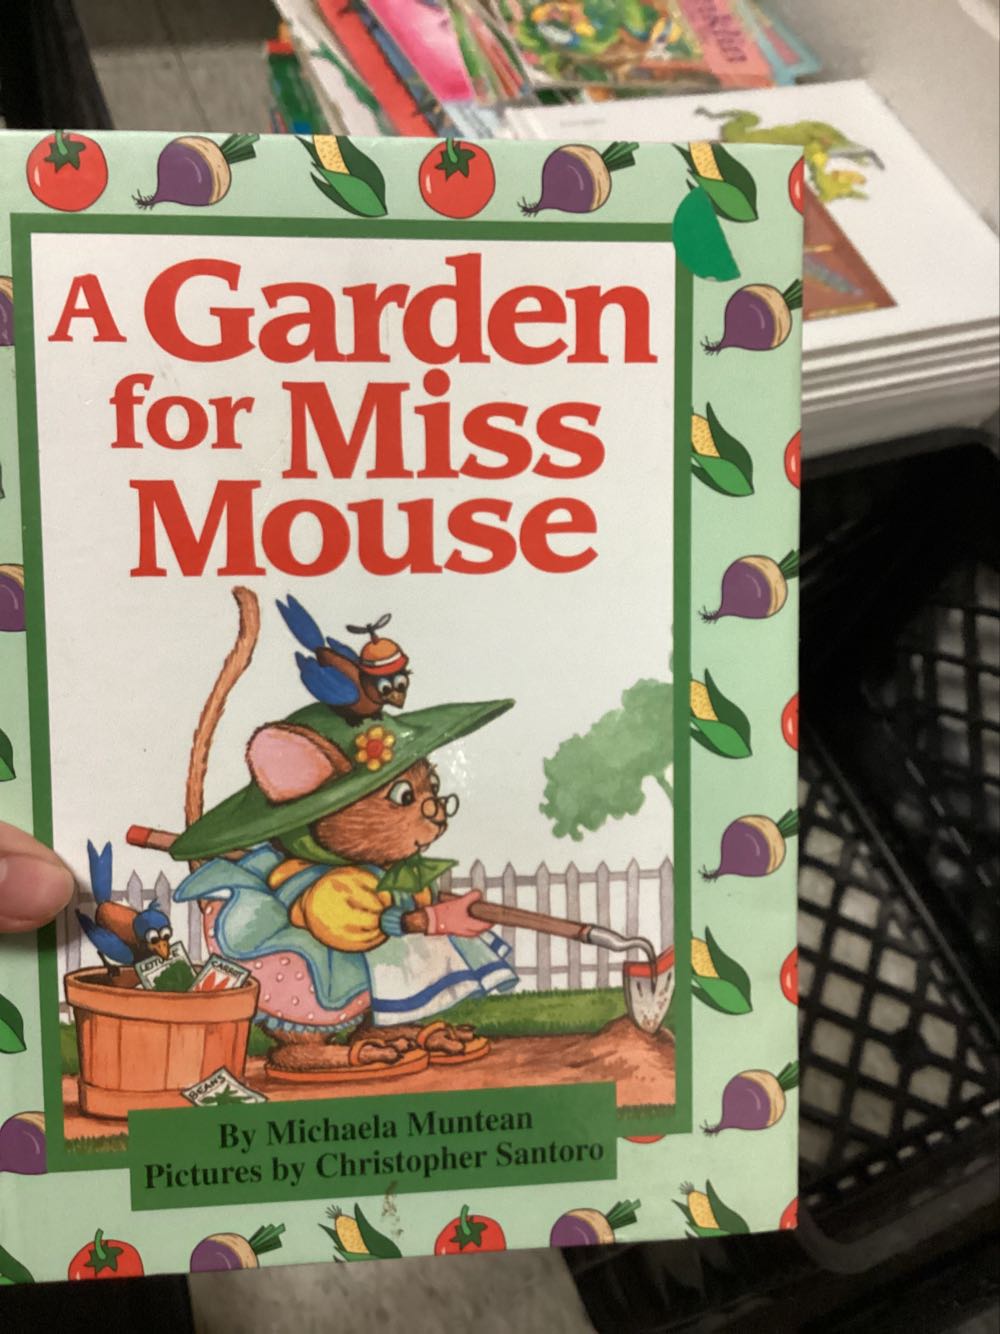 A Garden Fir Mise Mouse - Michaela Muntean book collectible - Main Image 1